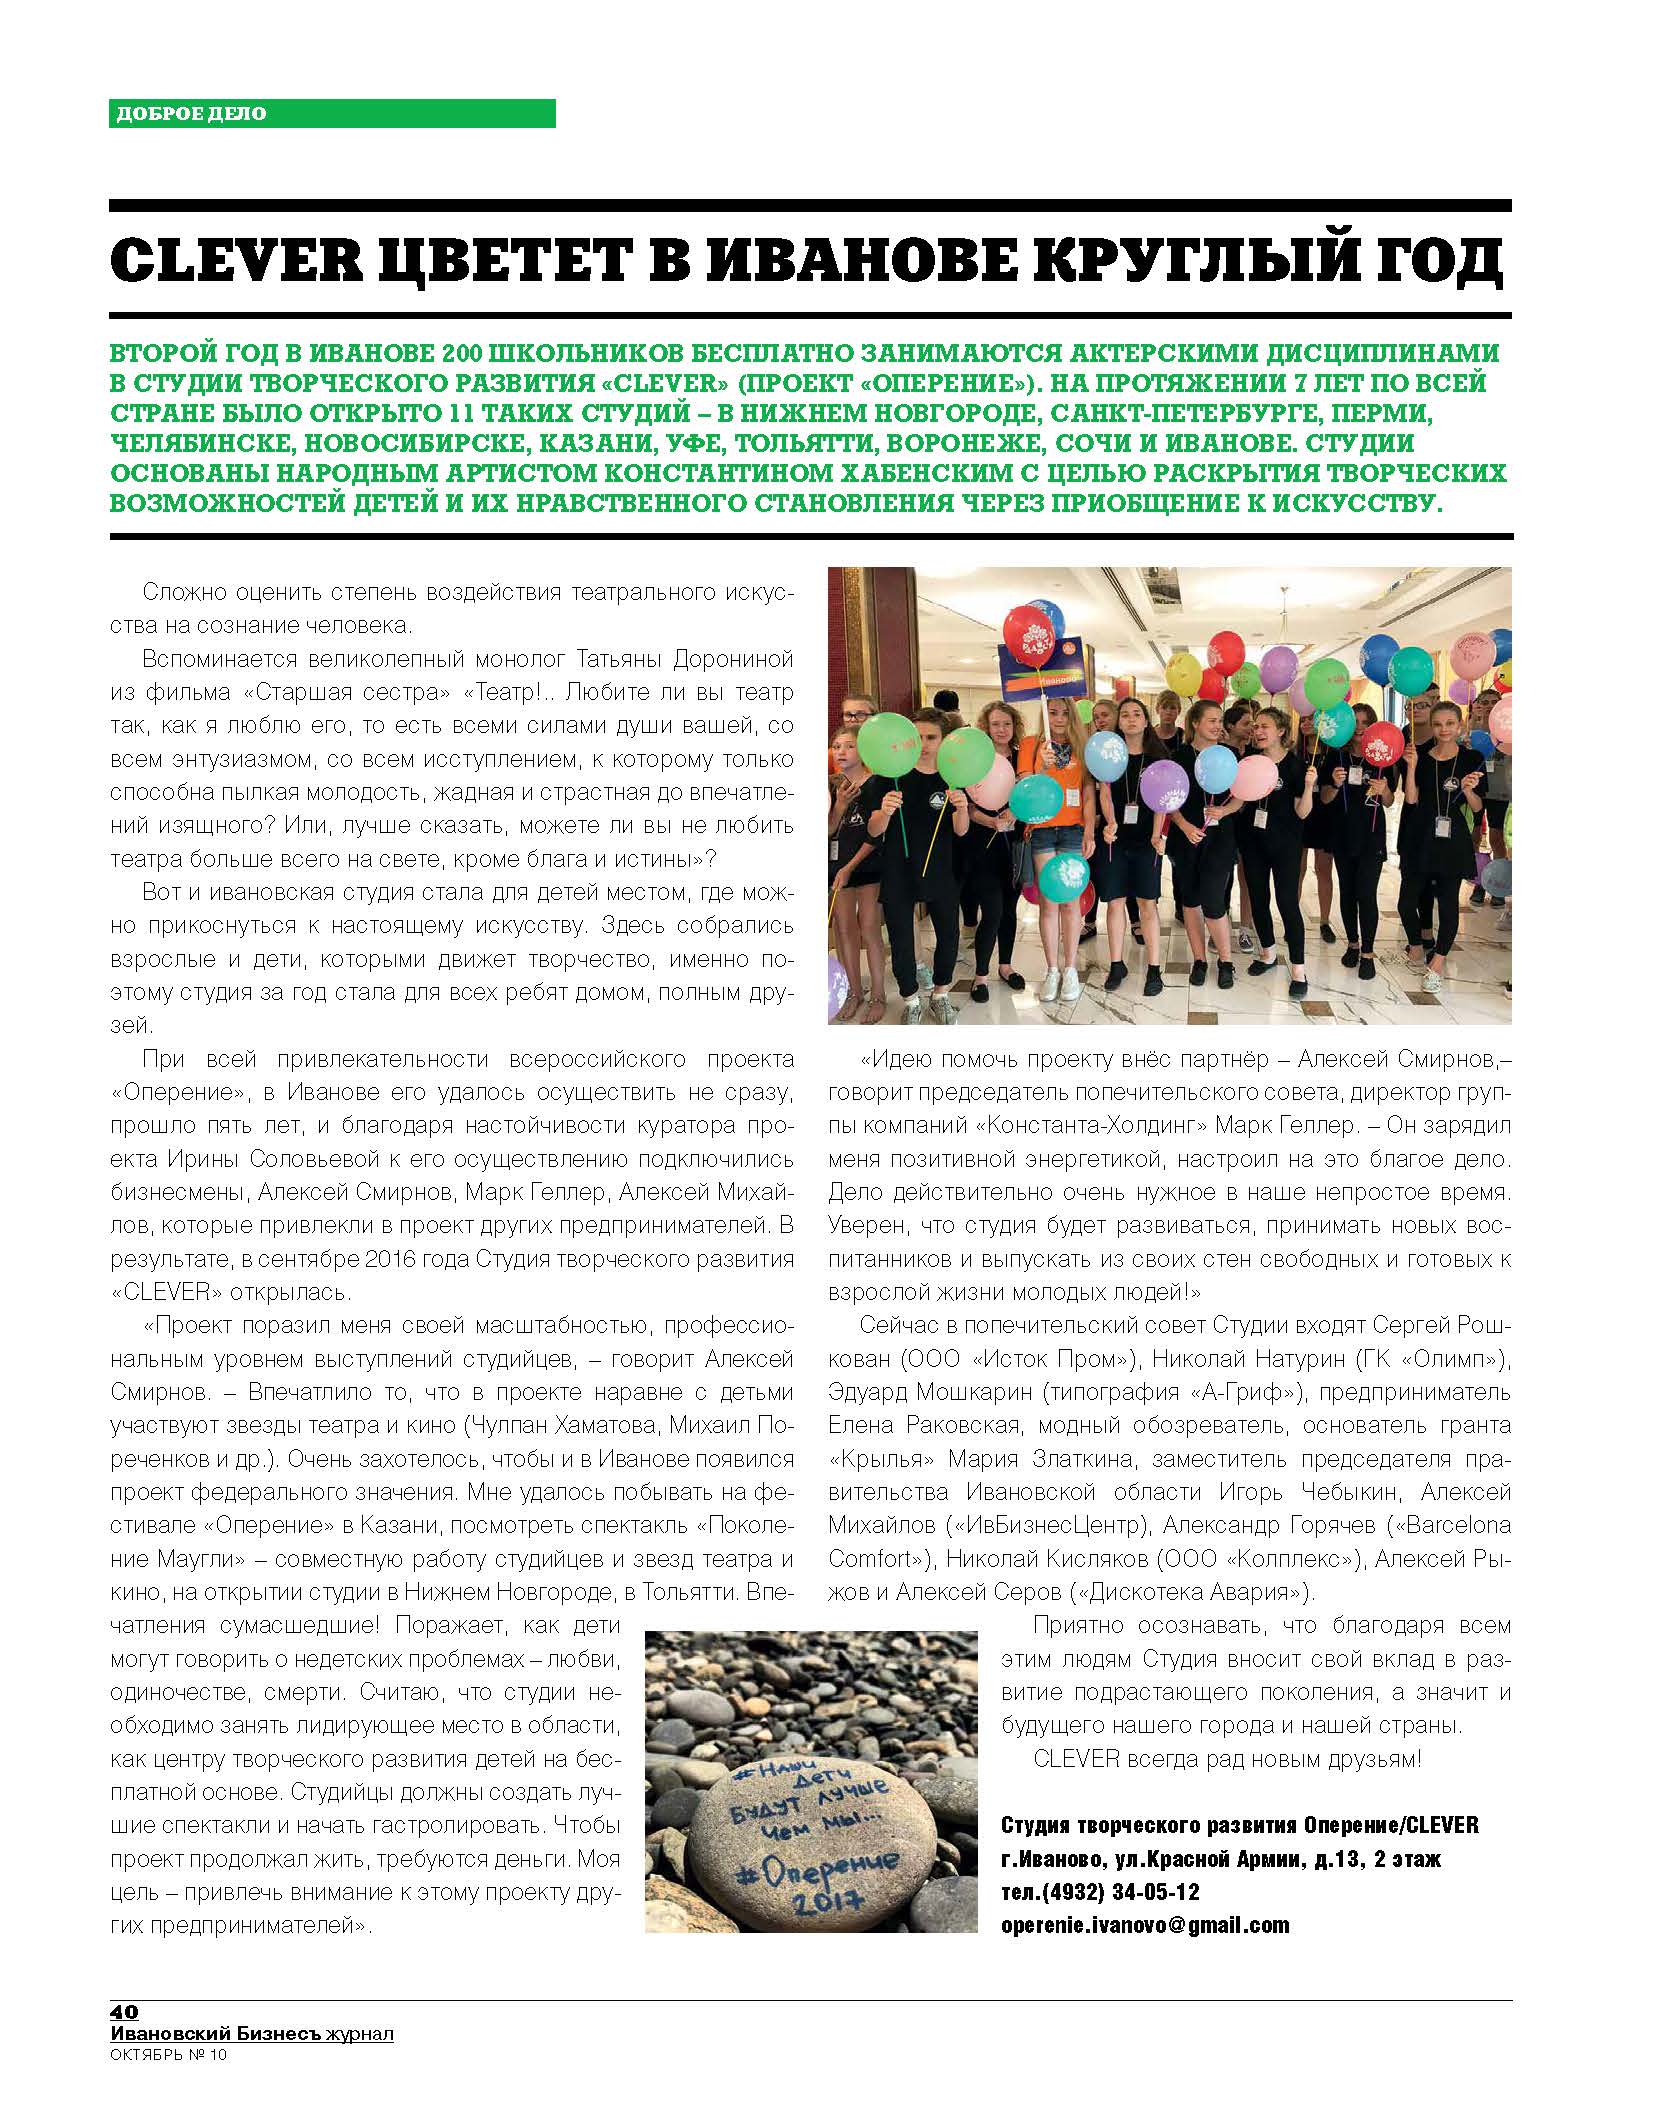 Статья о студии Clever в журнале Ивановский бизнес